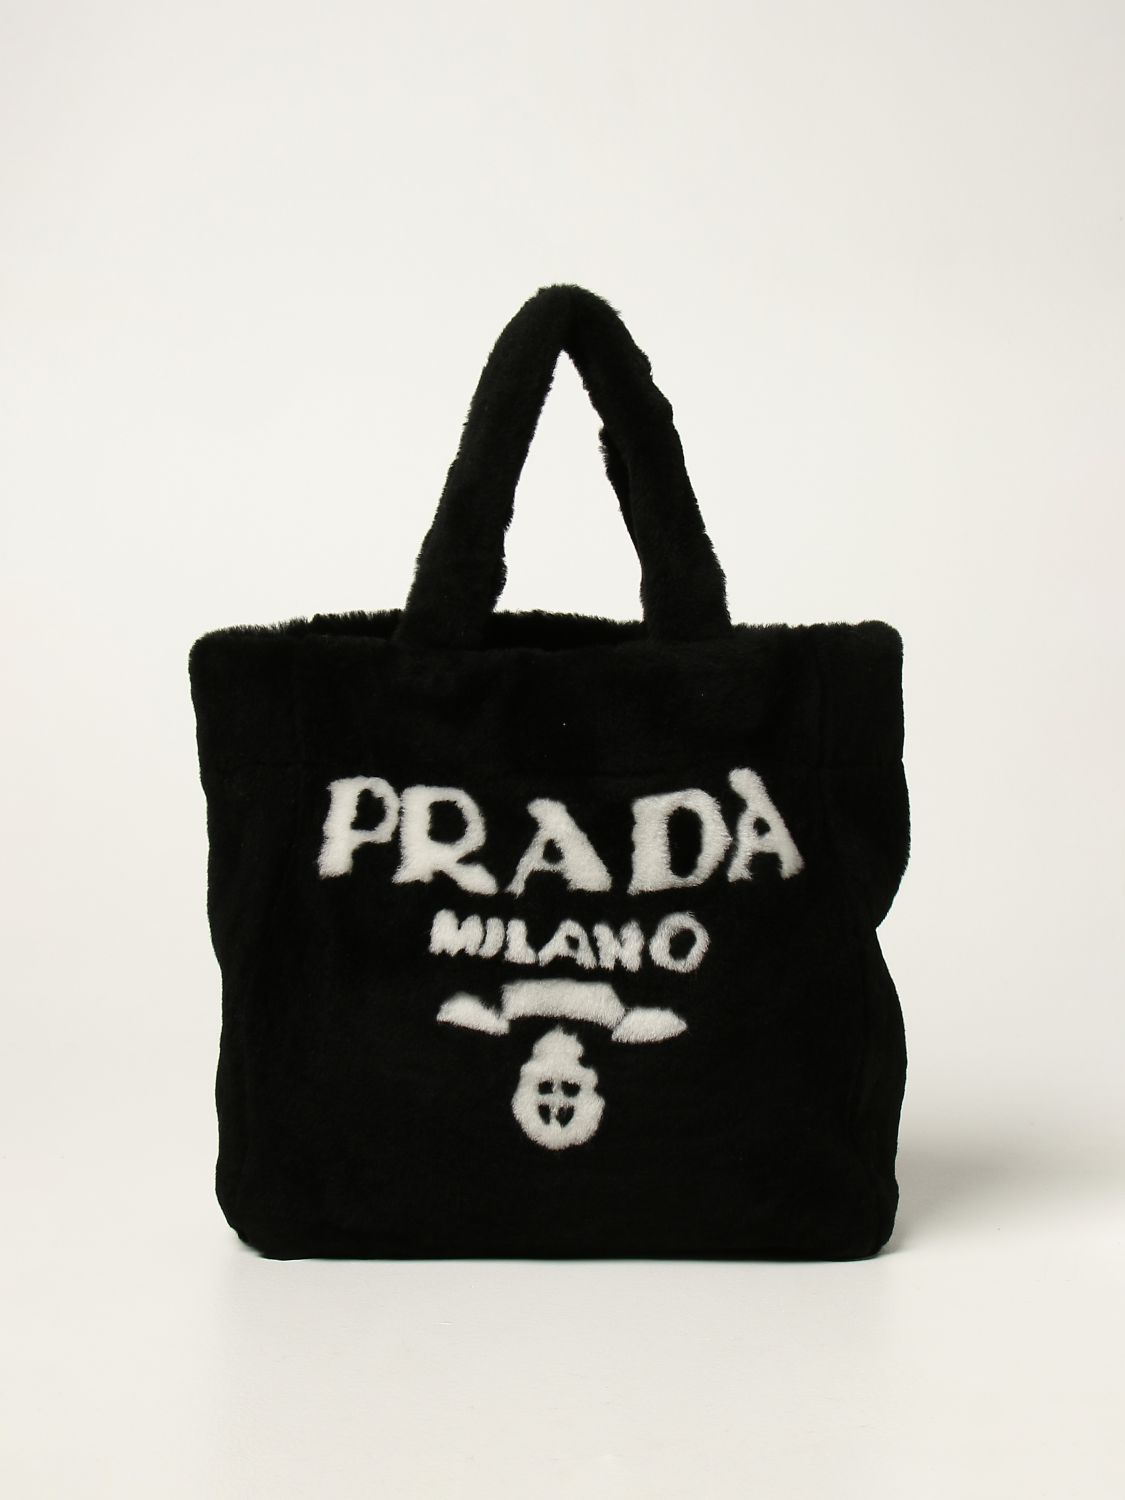 PRADA: sheepskin bag with logo - Black  Prada tote bags 1BG374 2EC9 online  at